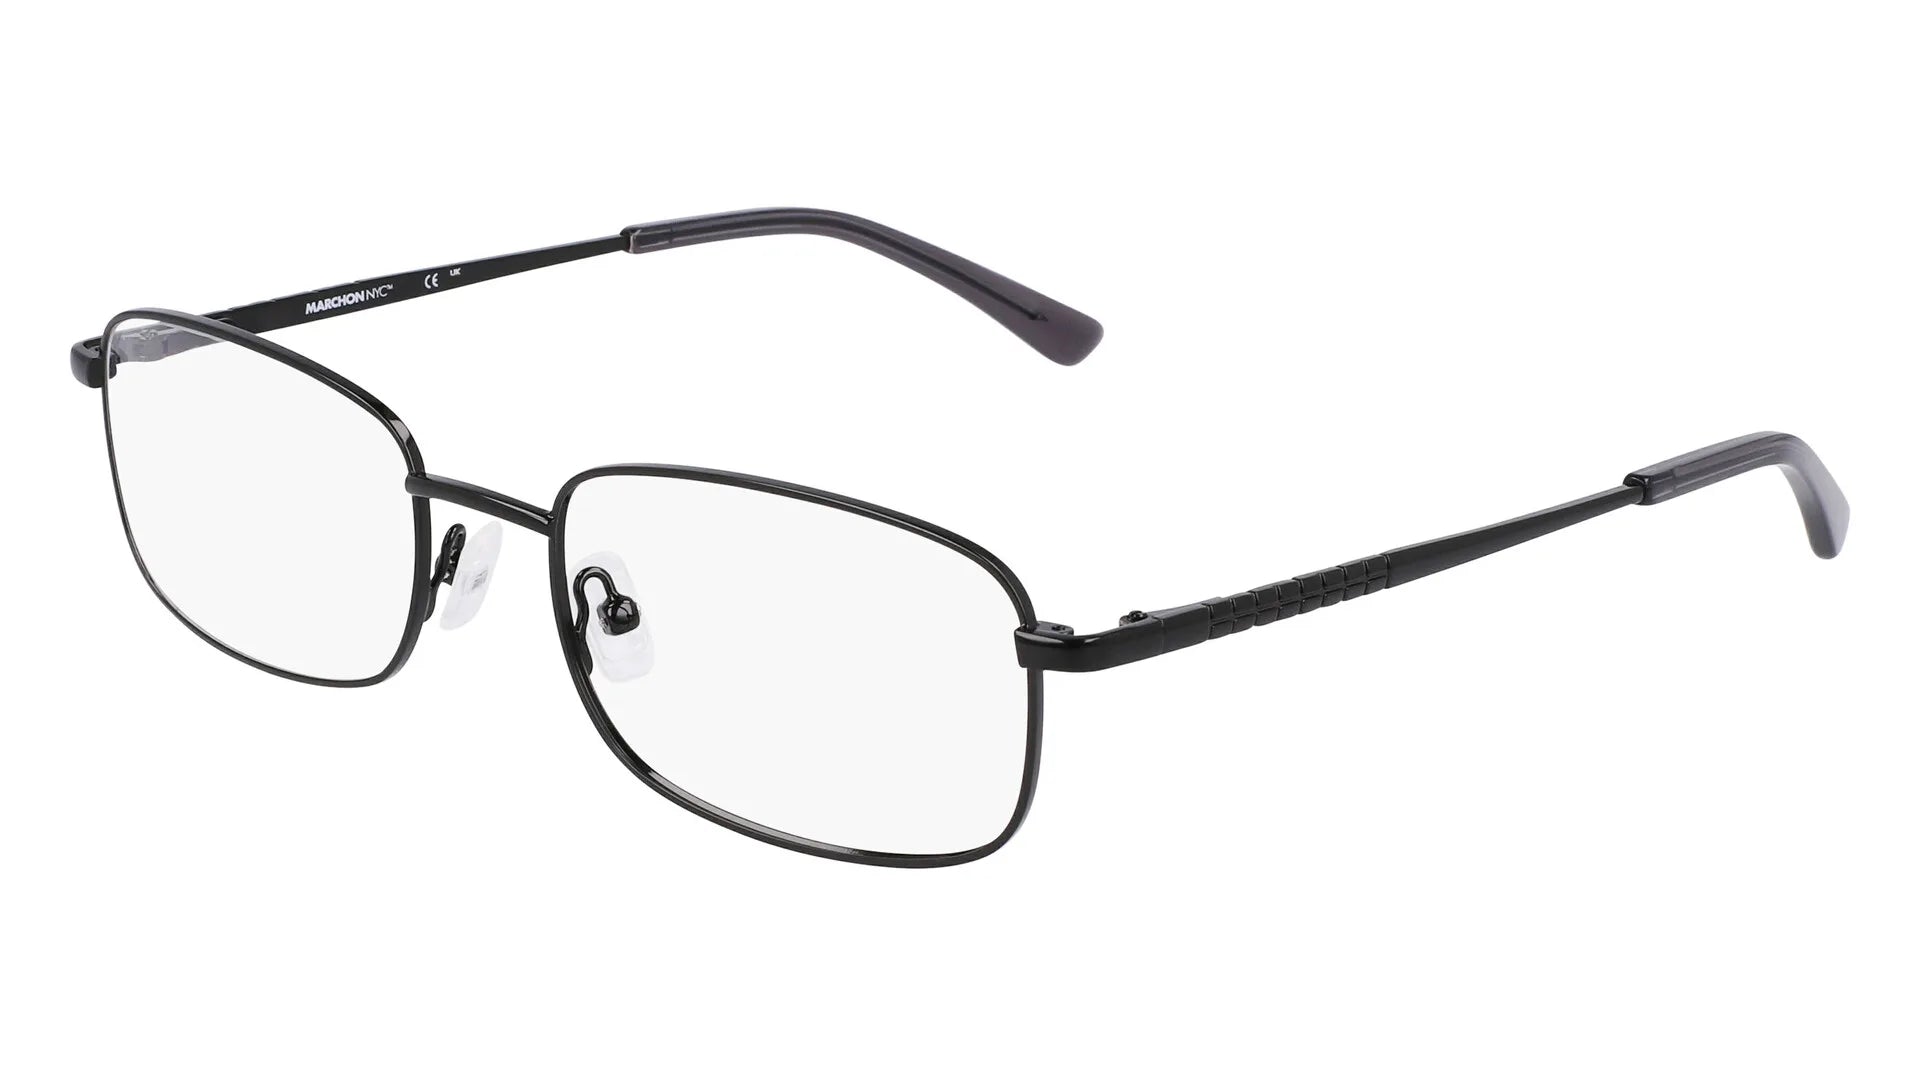 Marchon NYC M-9006 Eyeglasses Shiny Black